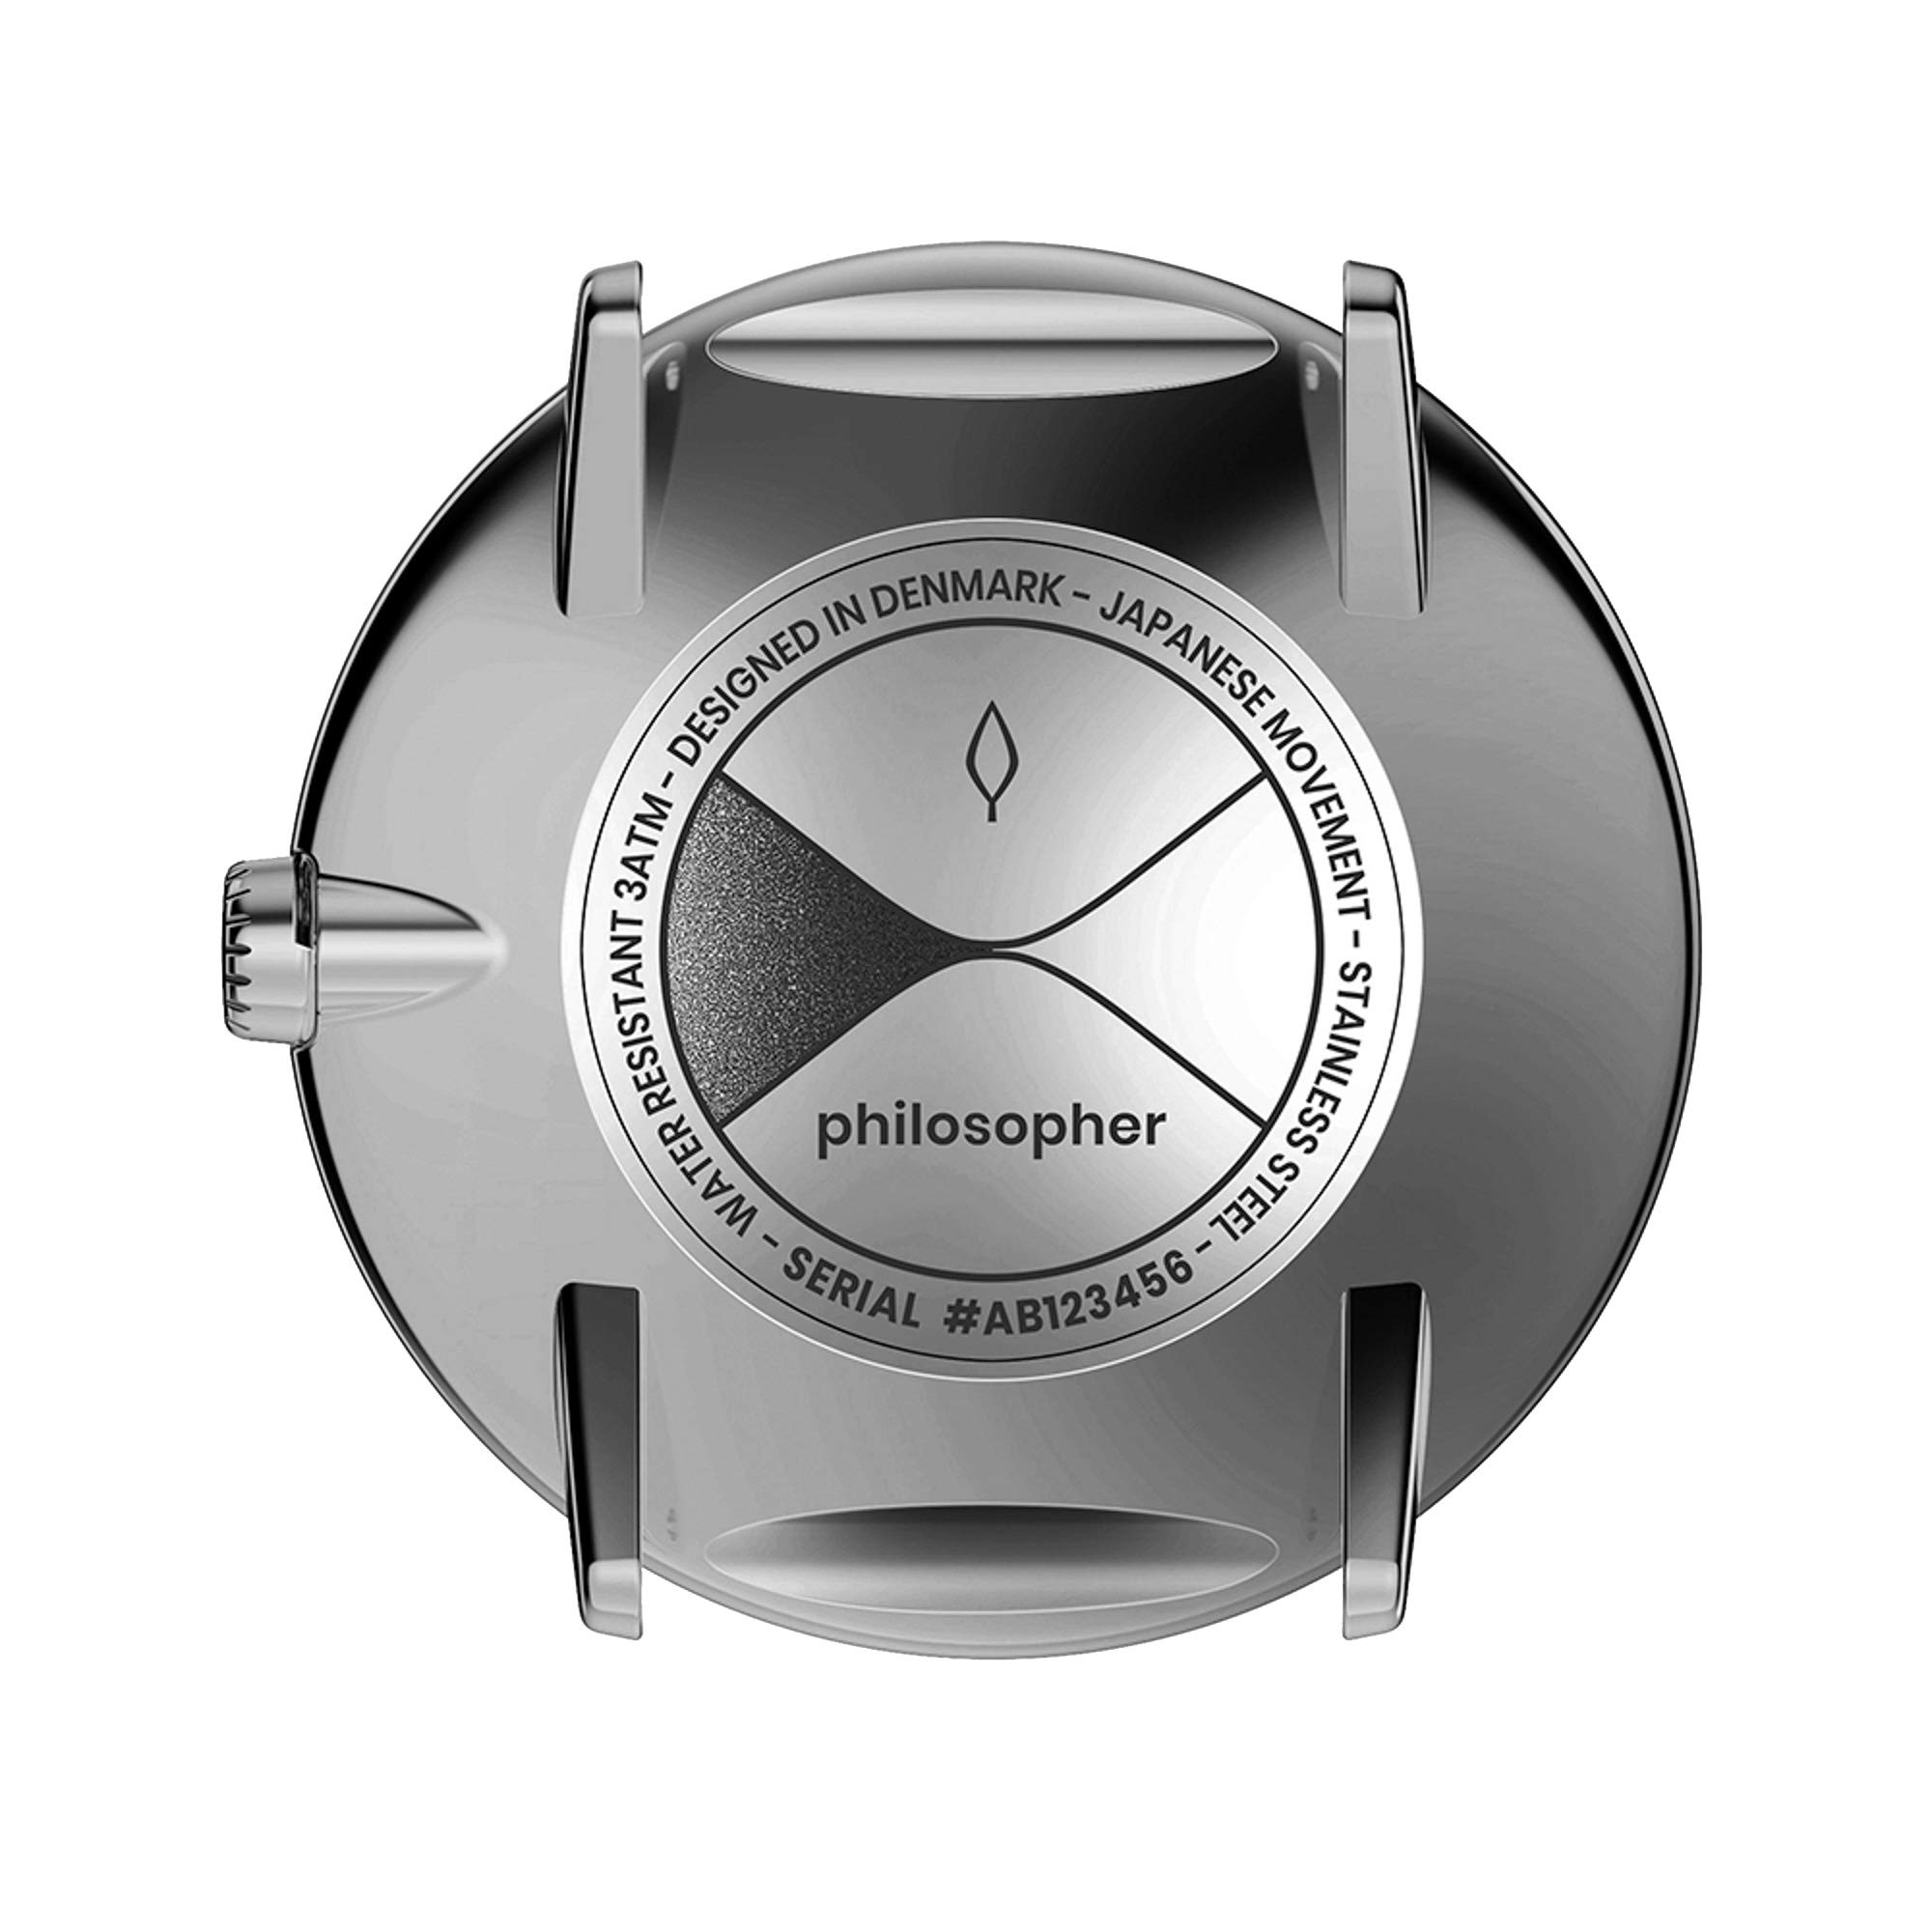 Nordgreen Skandinavische Design Uhr Analog Quarz Anthrazit | Weißes Ziffernblatt | Austauschbare Armbänder | Modell: Philosopher